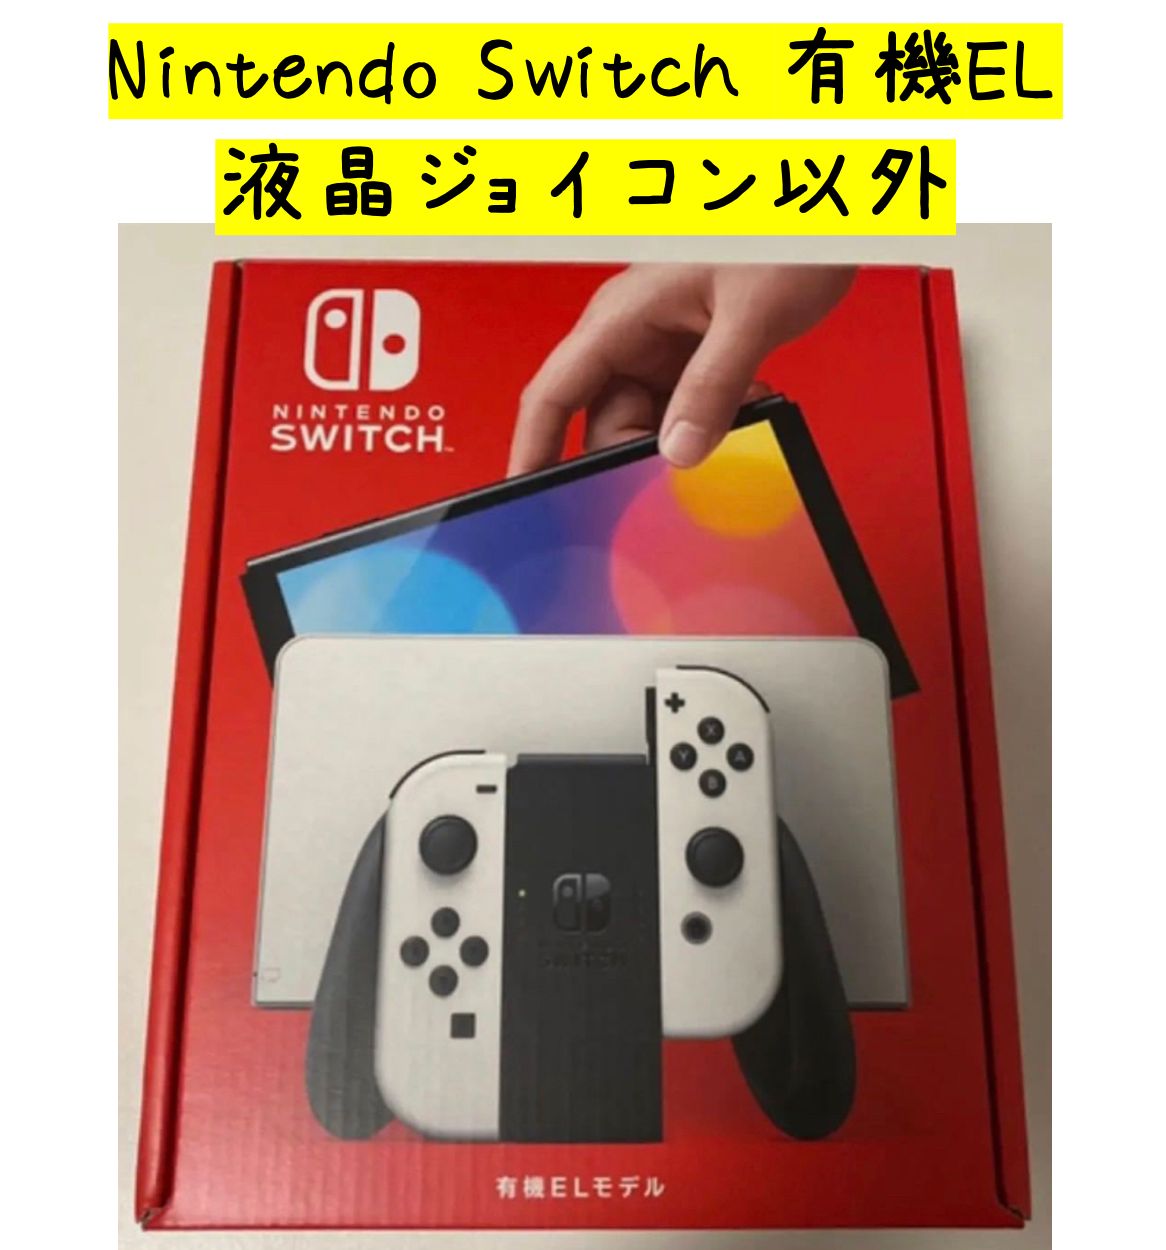 液晶・ジョイコンなし】NintendoSwitch(有機ELモデル) ホワイト www ...